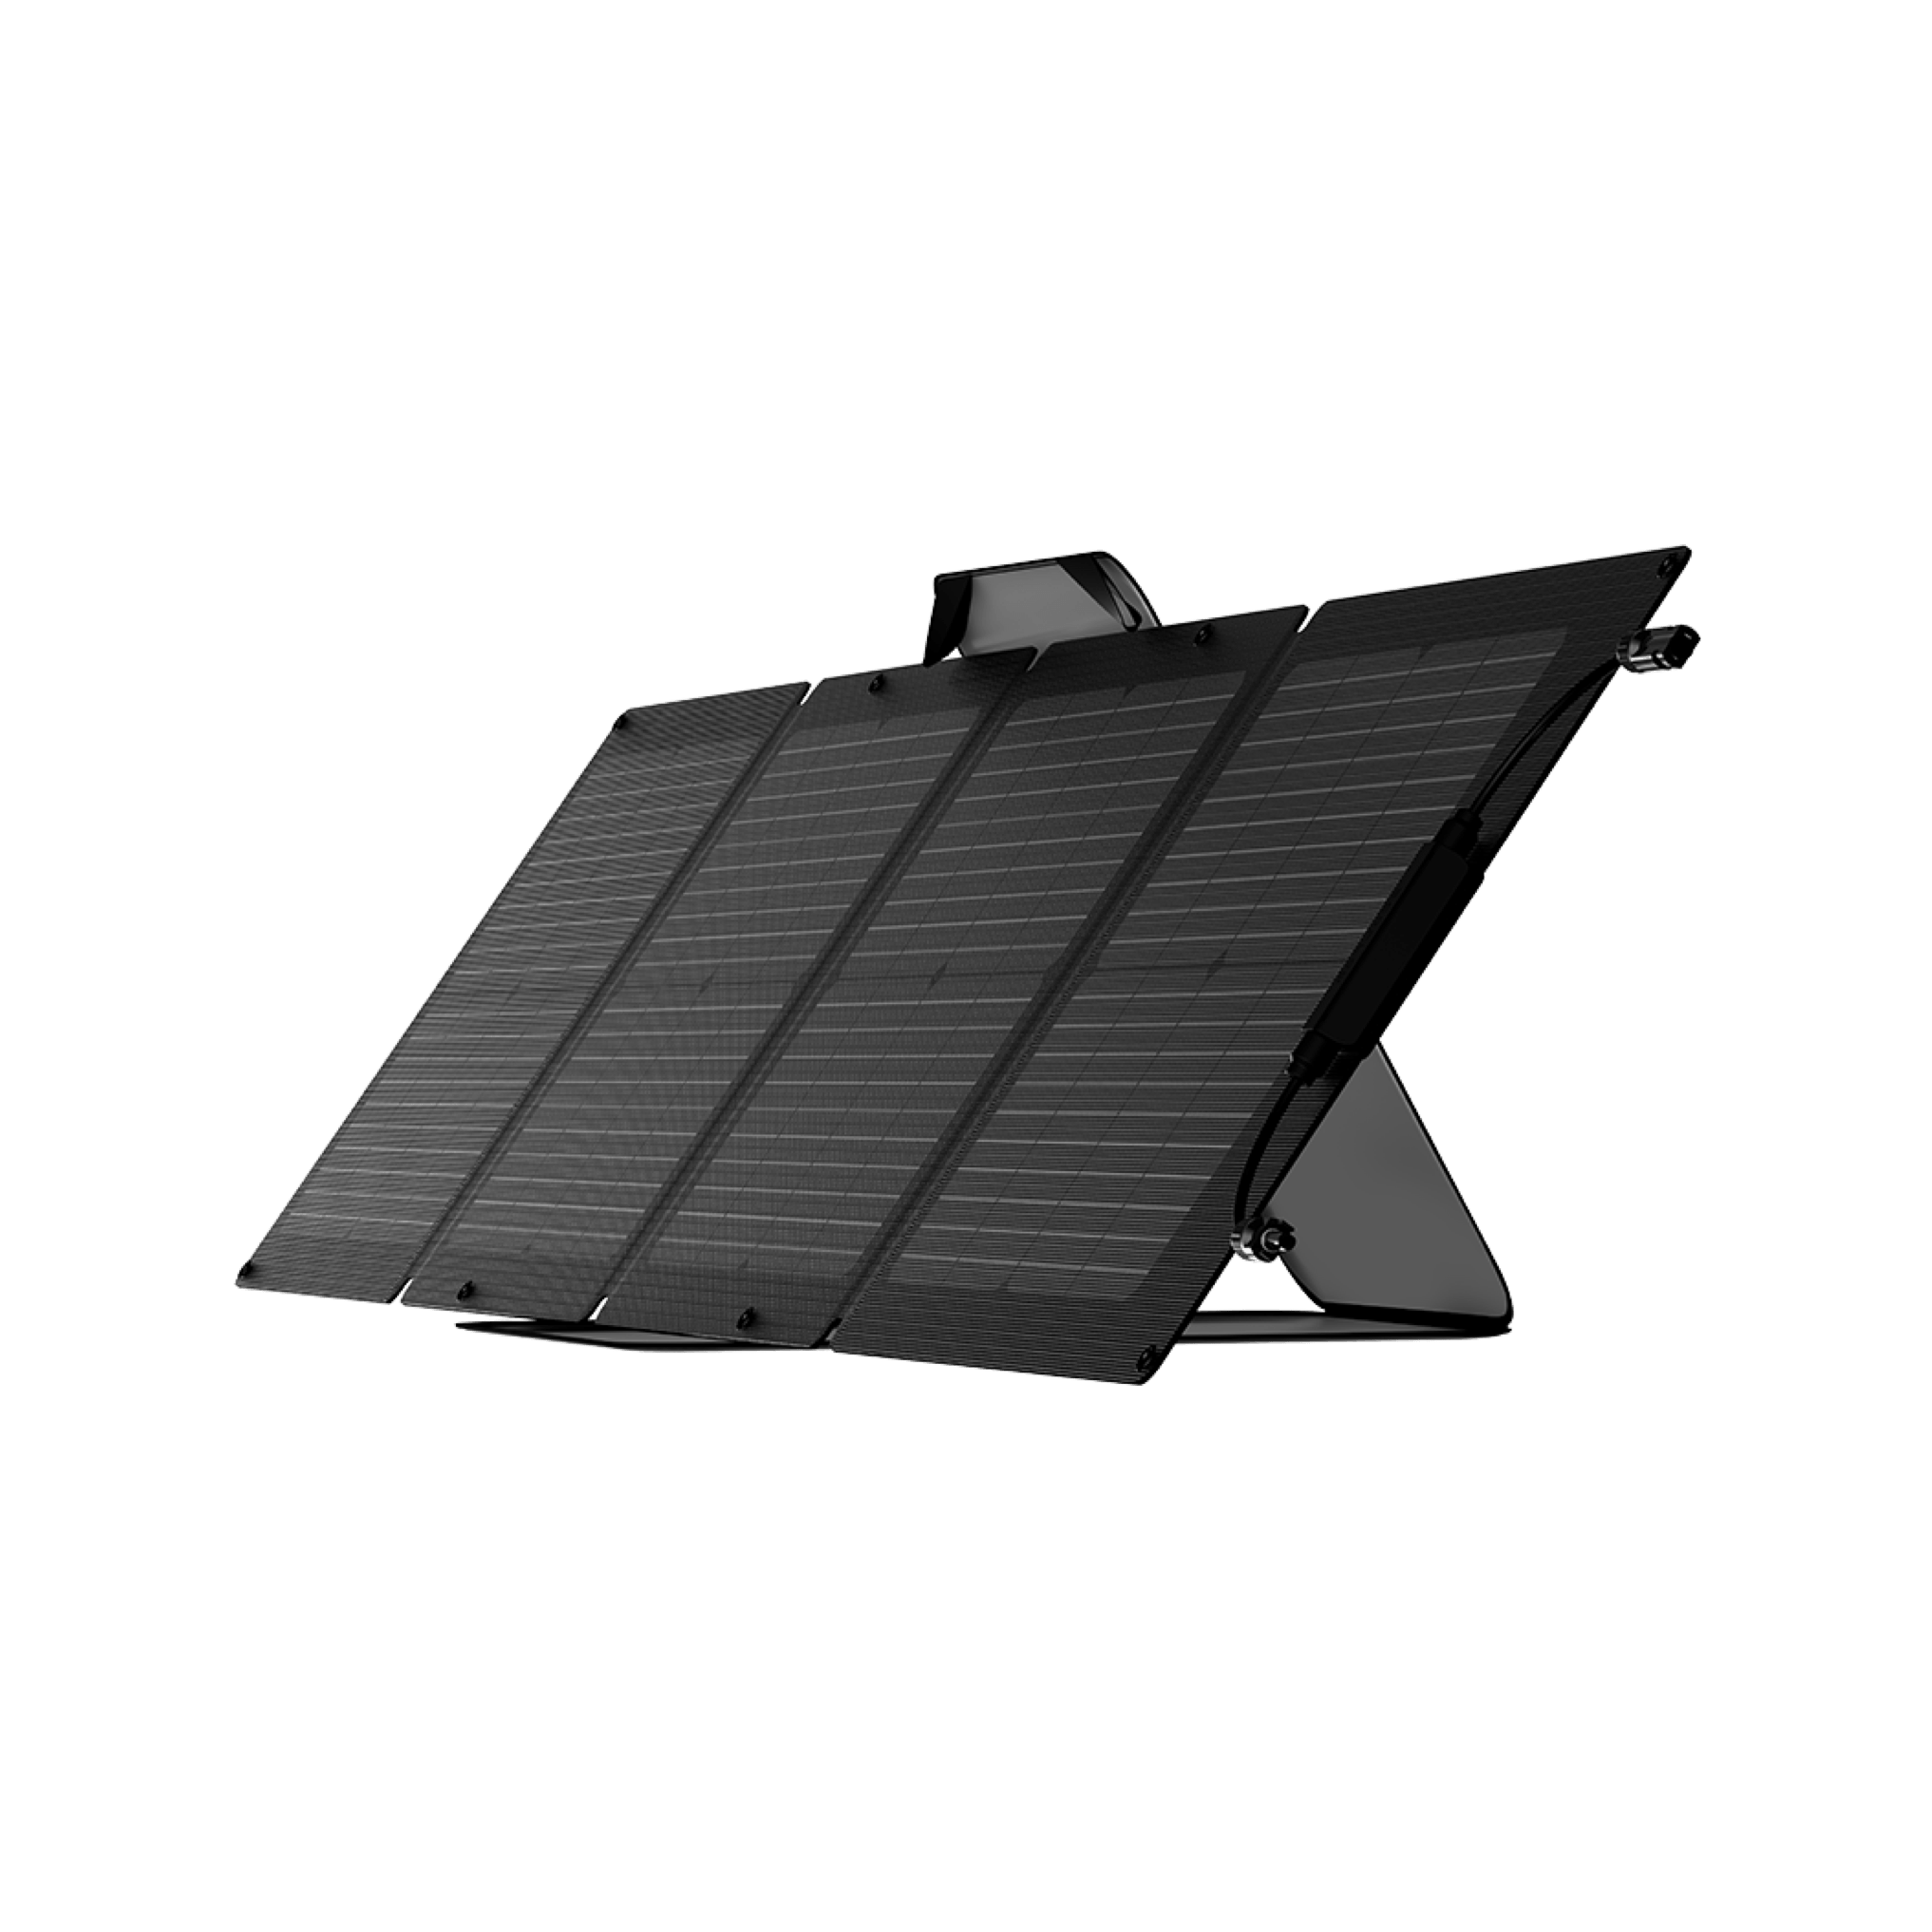 Panel solar portátil Ecoflow nueva generación plug & play - EcoFlow ES